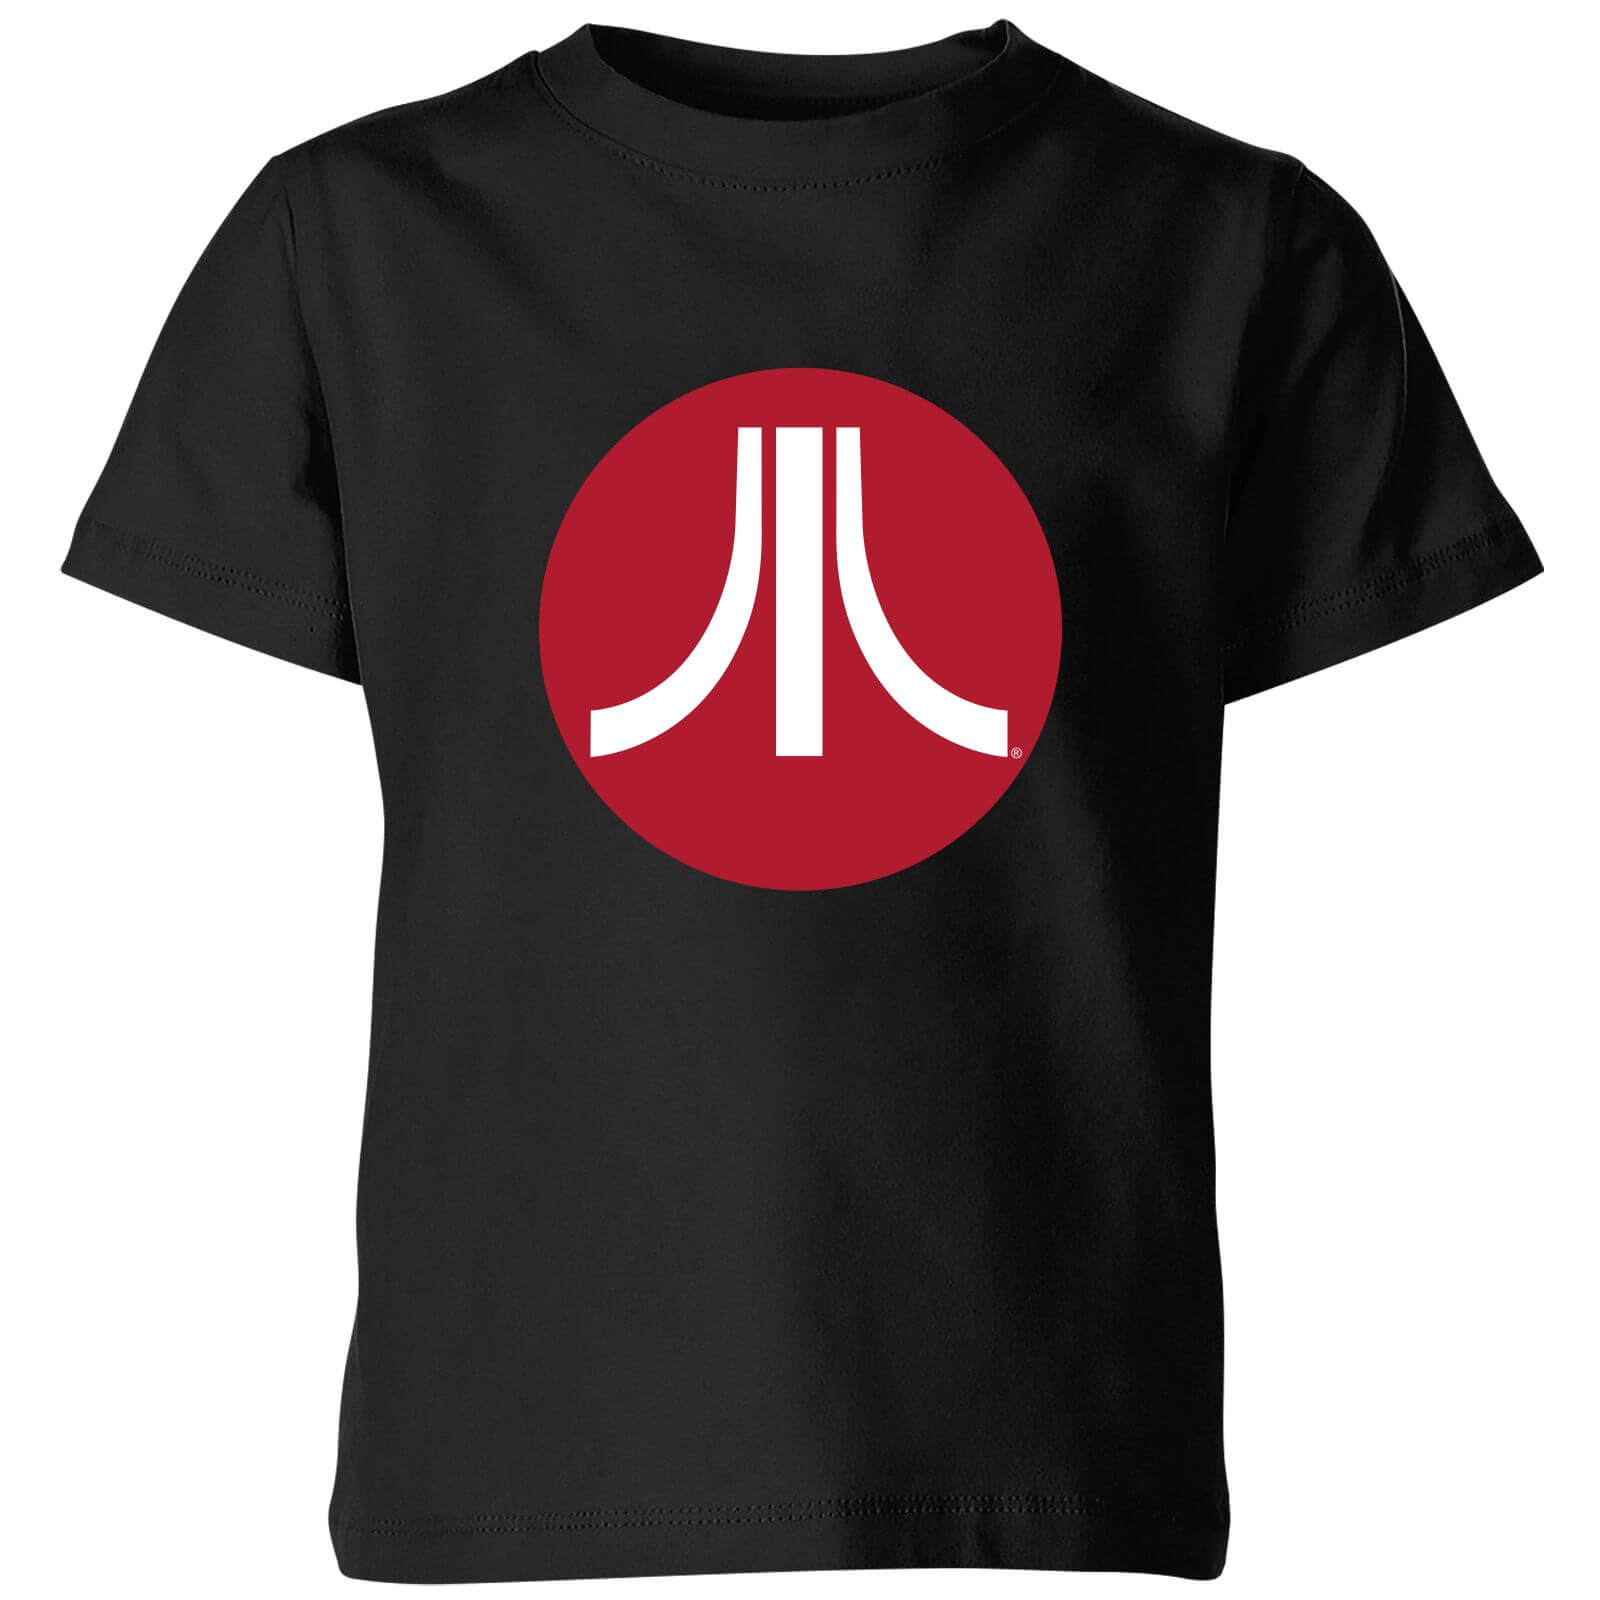 Atari Circle Logo Kids' T-Shirt - Black - 3-4 Years